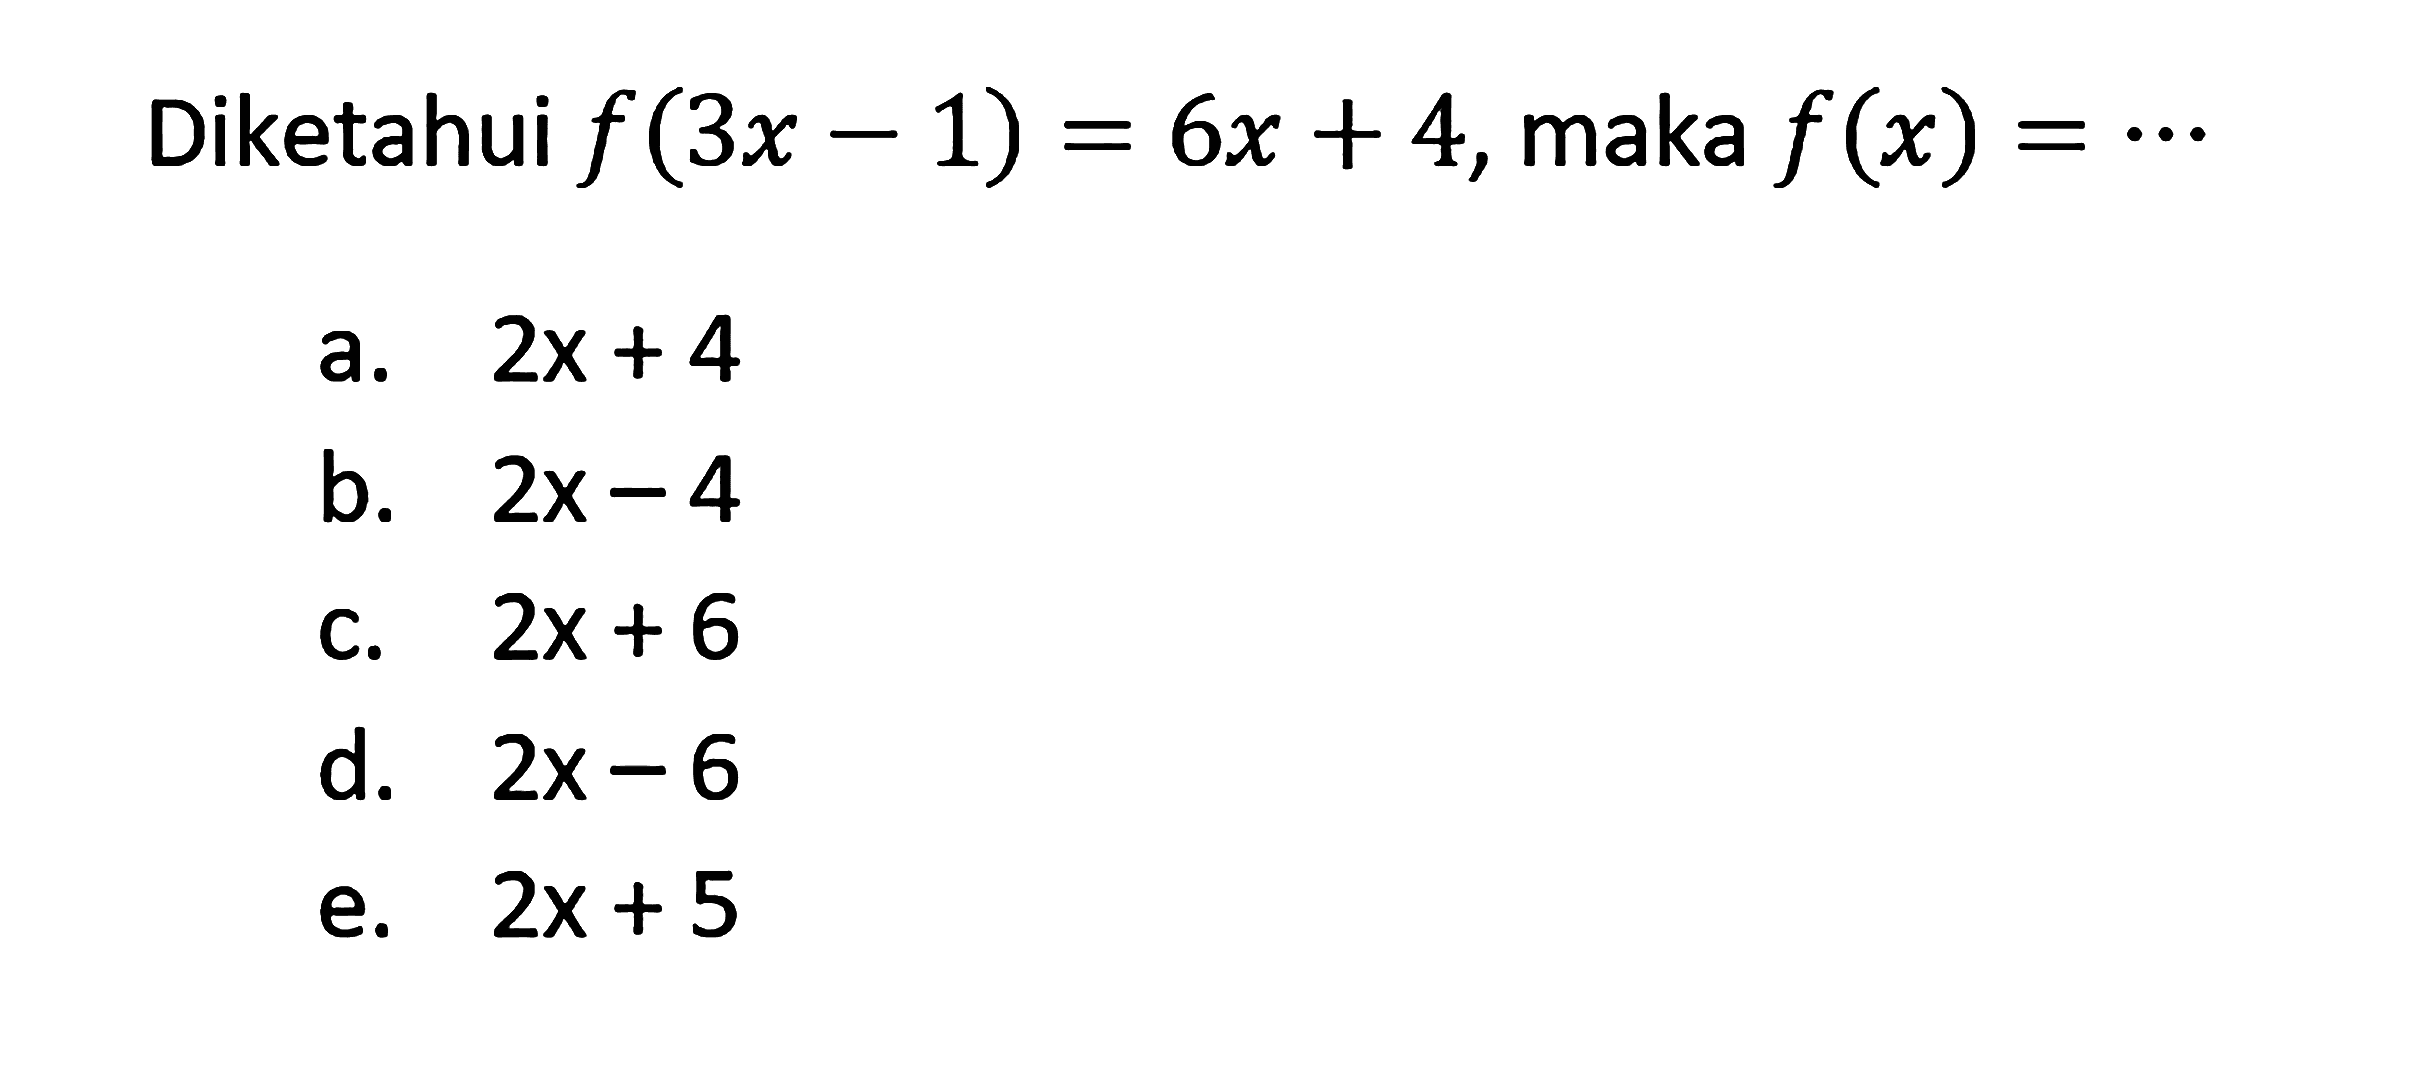 Diketahui f(3x-1)=6x+4, maka f(x)=... 